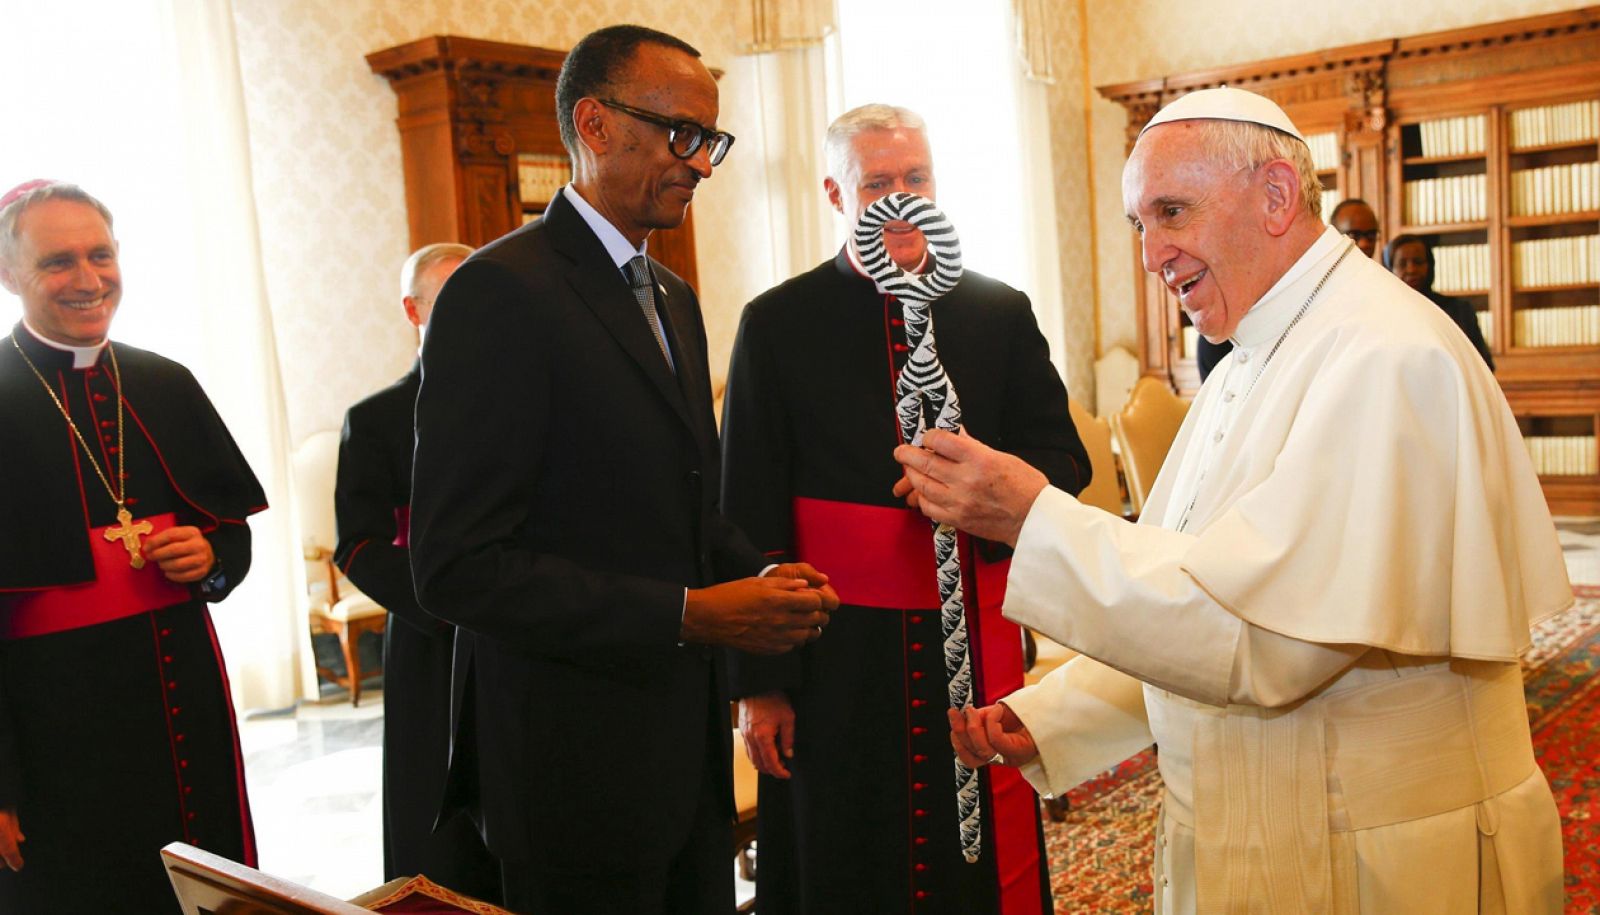 El papa Francisco intercambia regalos con el presidente de Ruanda, Paul Kagame, durante una audiencia privada en el Vaticano.